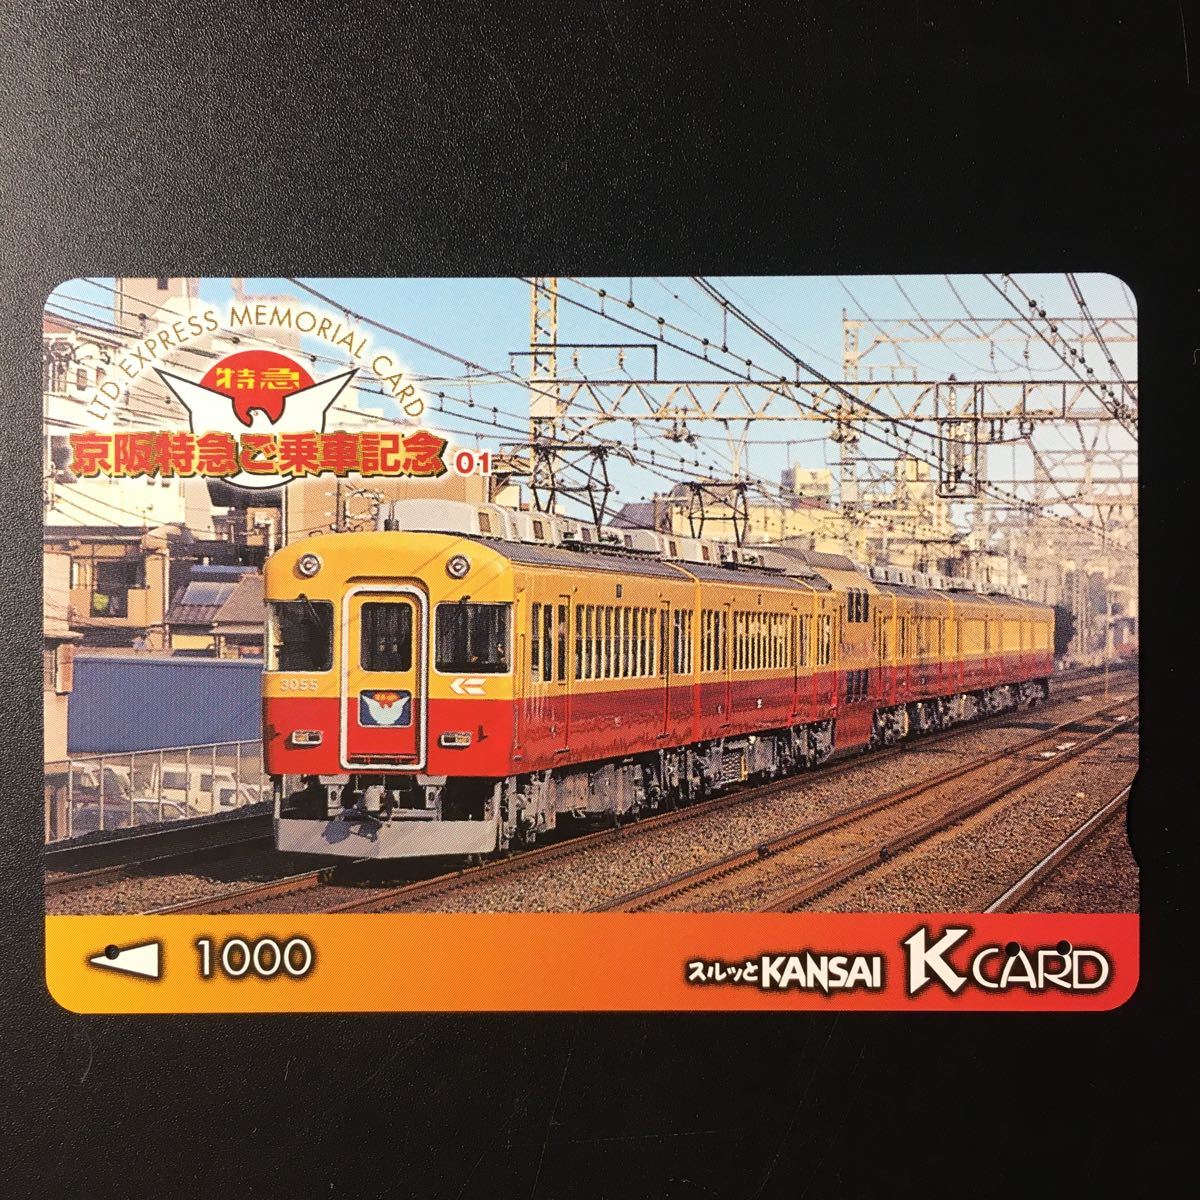 京阪/シリーズカードー京阪特急ご乗車記念シリーズ1「3000系」ー2001年発売ー京阪スルッとKANSAI Kカード(使用済)の画像1